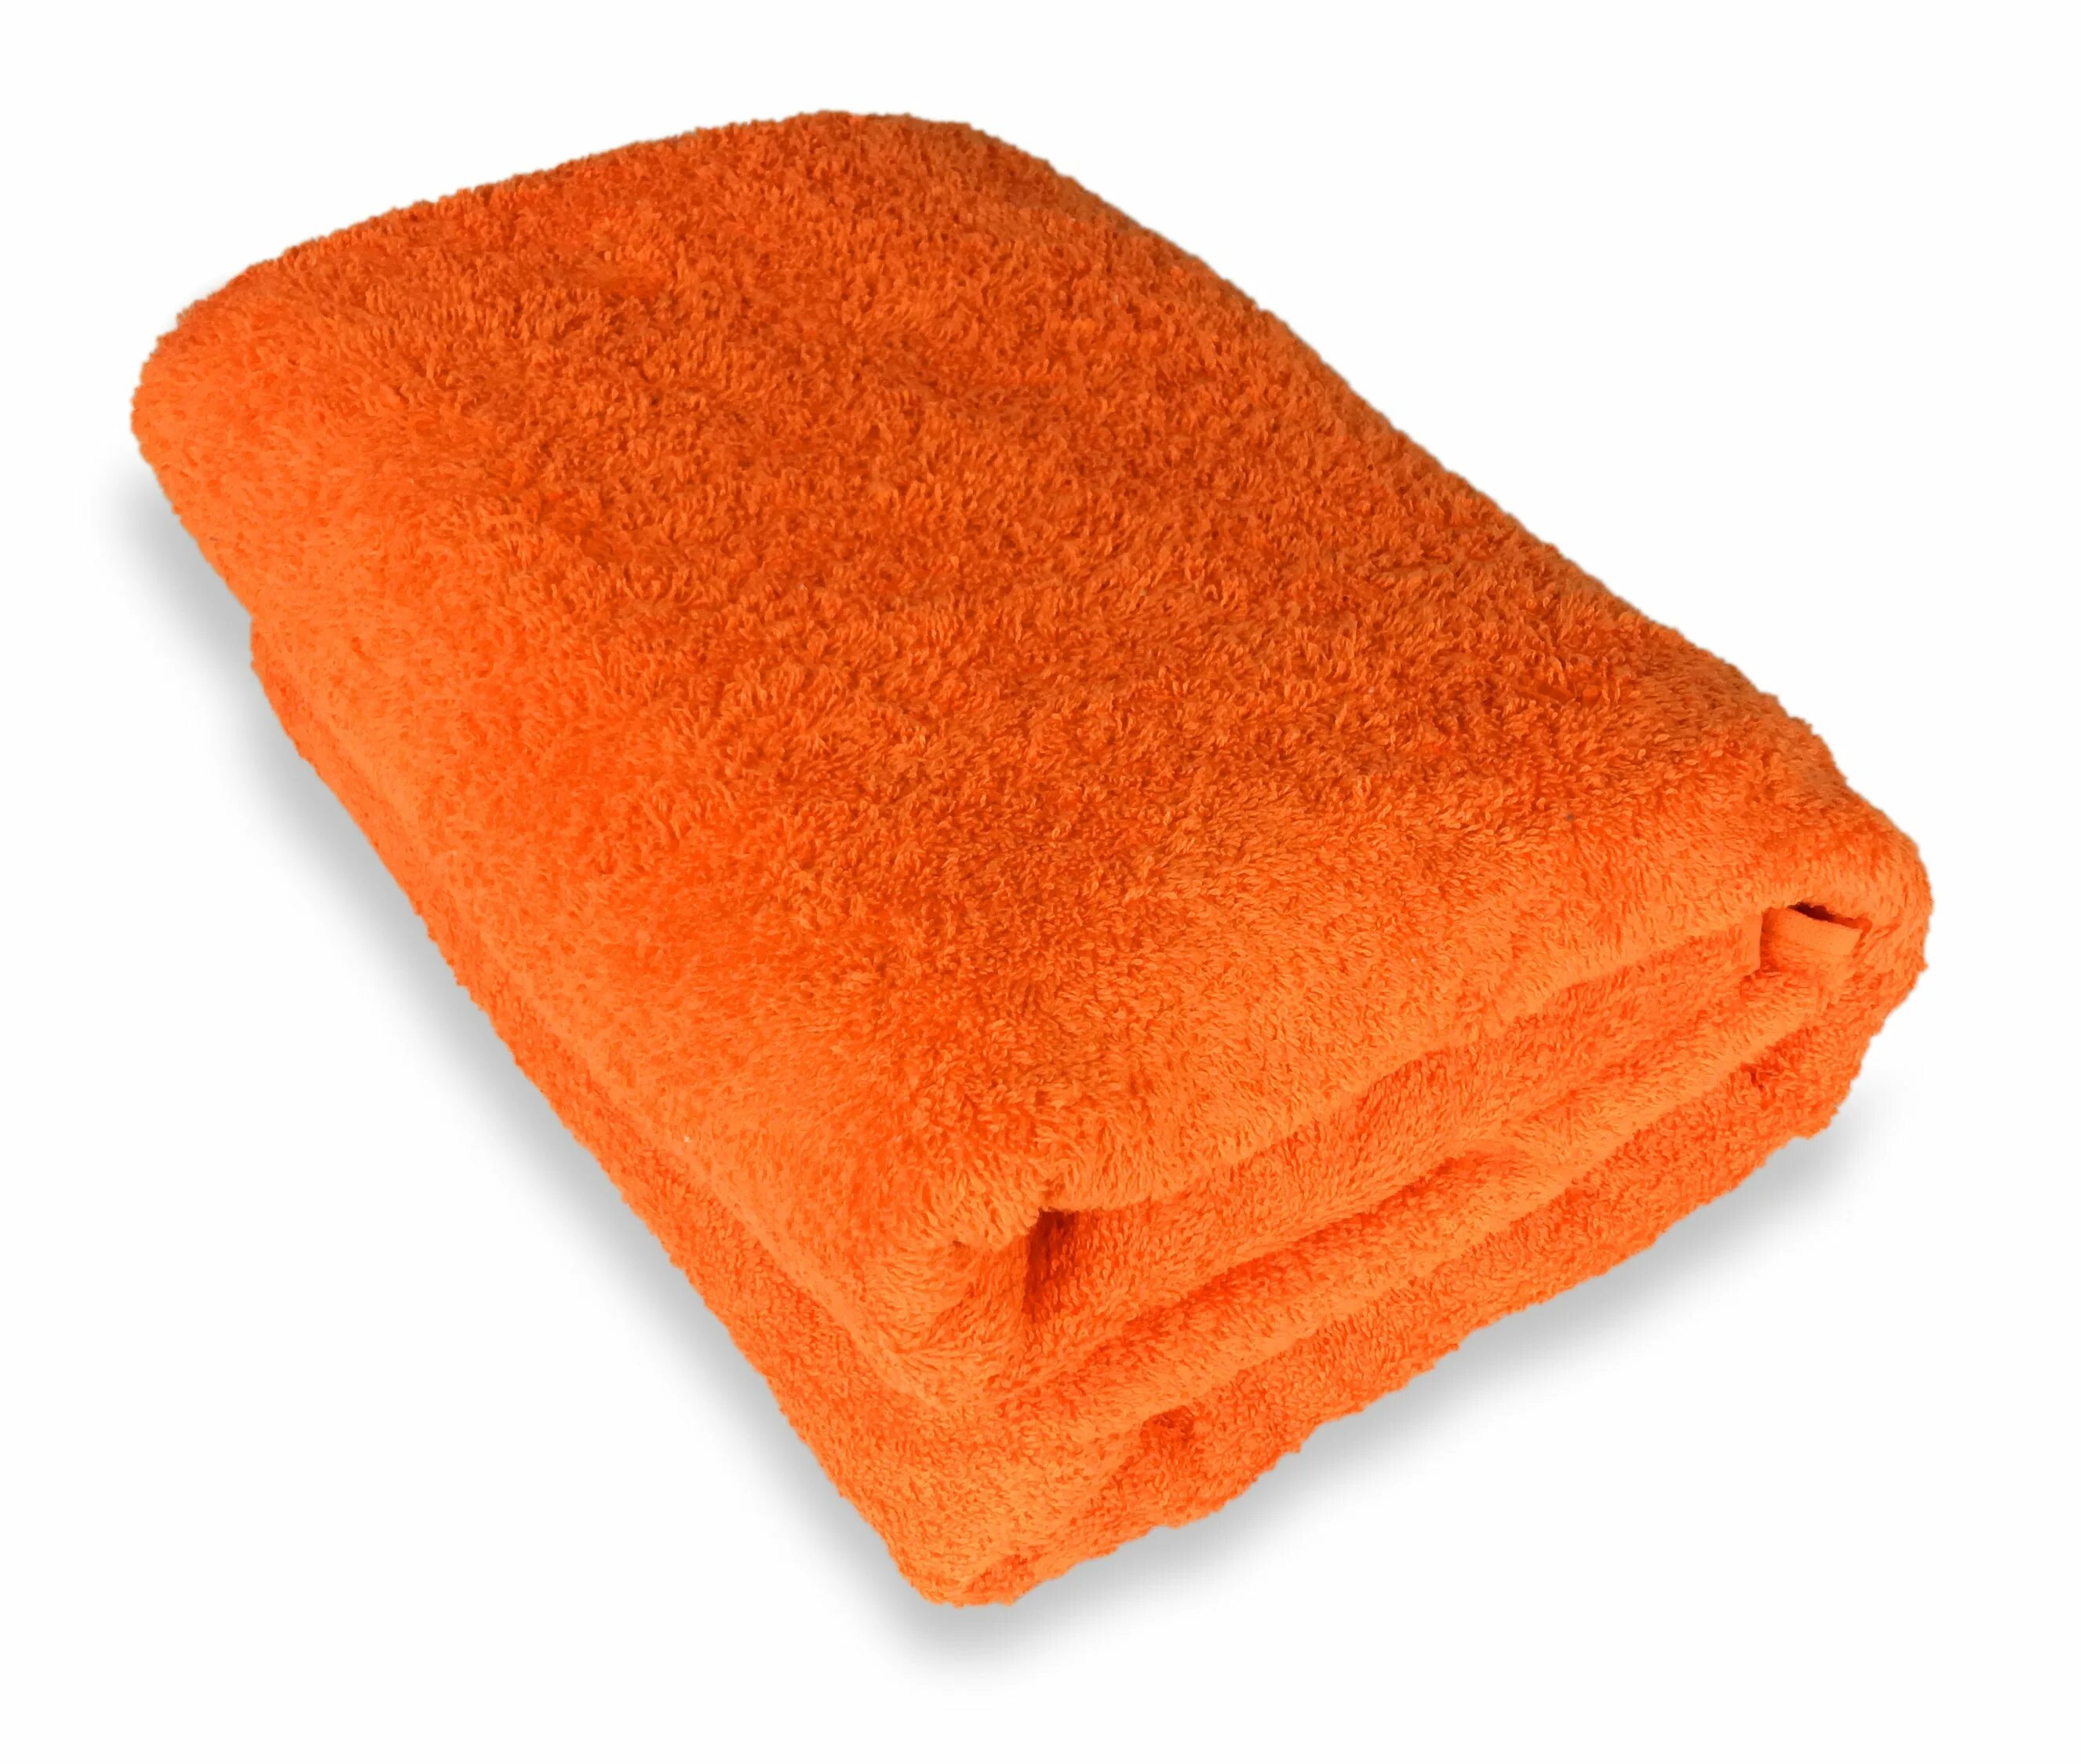 Оранжевое полотенце. Полотенце махровое оранжевое. Полотенце микрофибра оранжевое. Оранжевое полотенце текстиль.